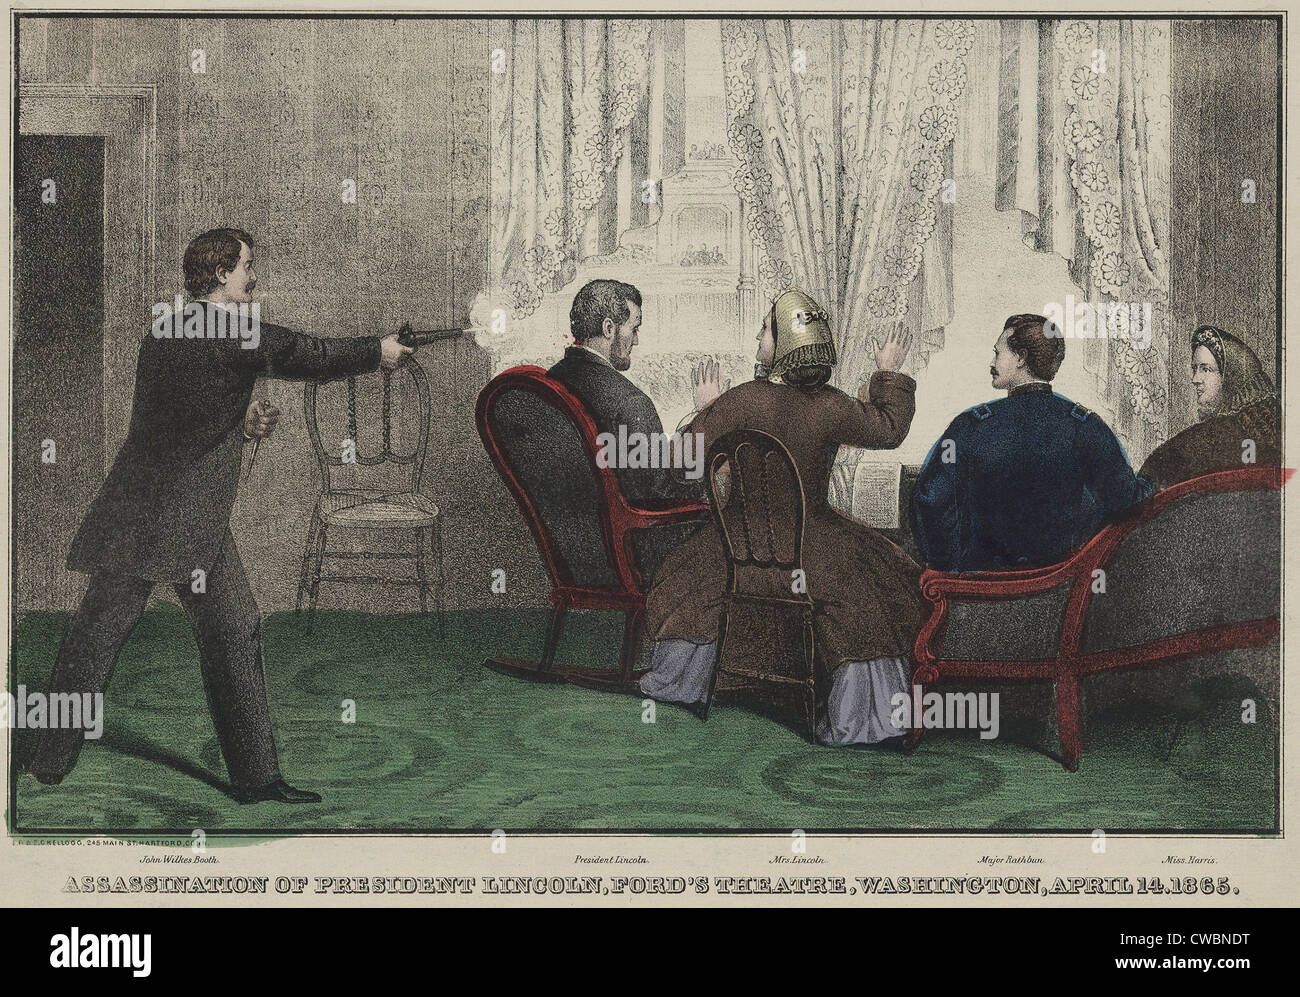 Die Ermordung von Präsident Lincoln von John Wilkes Booth im Ford Theater, Washington, D. C., 14. April 1865. Stockfoto